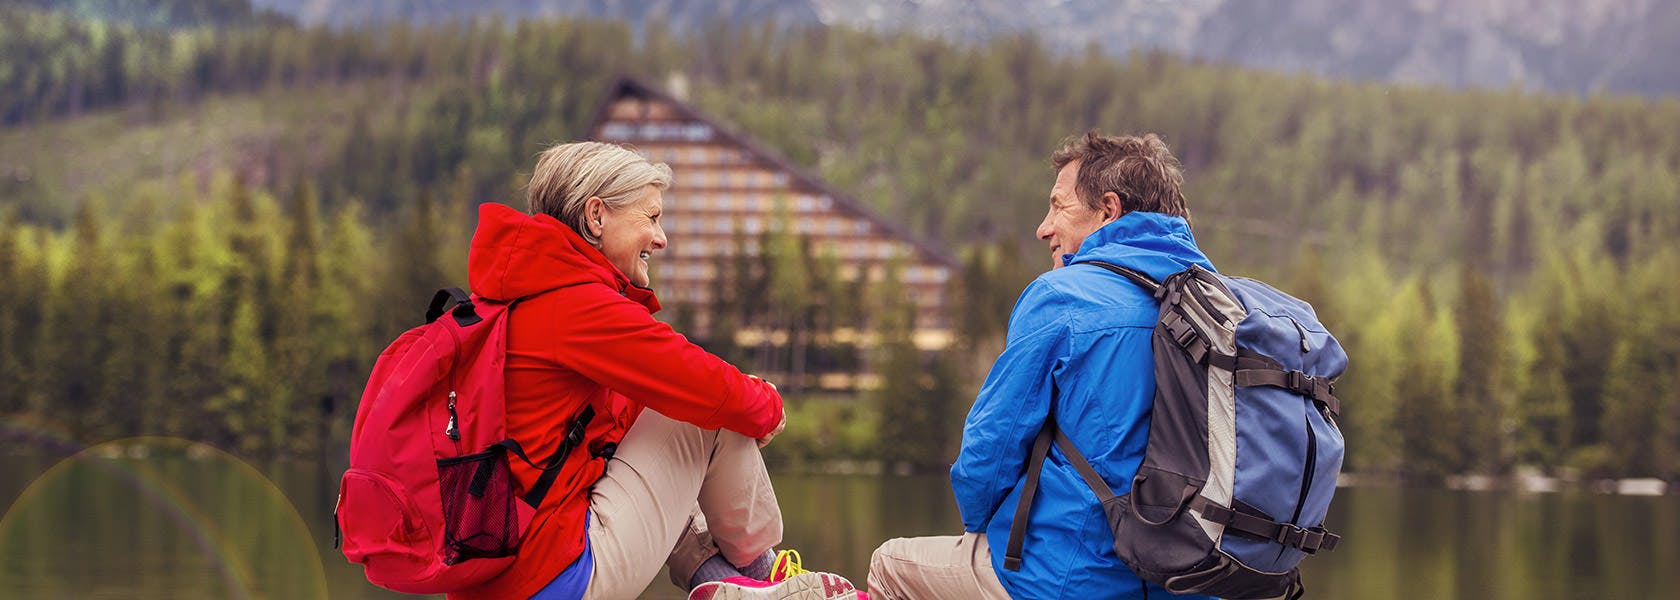 Cặp đôi trung niên đi bộ quanh hồ ở đồi núi đẹp